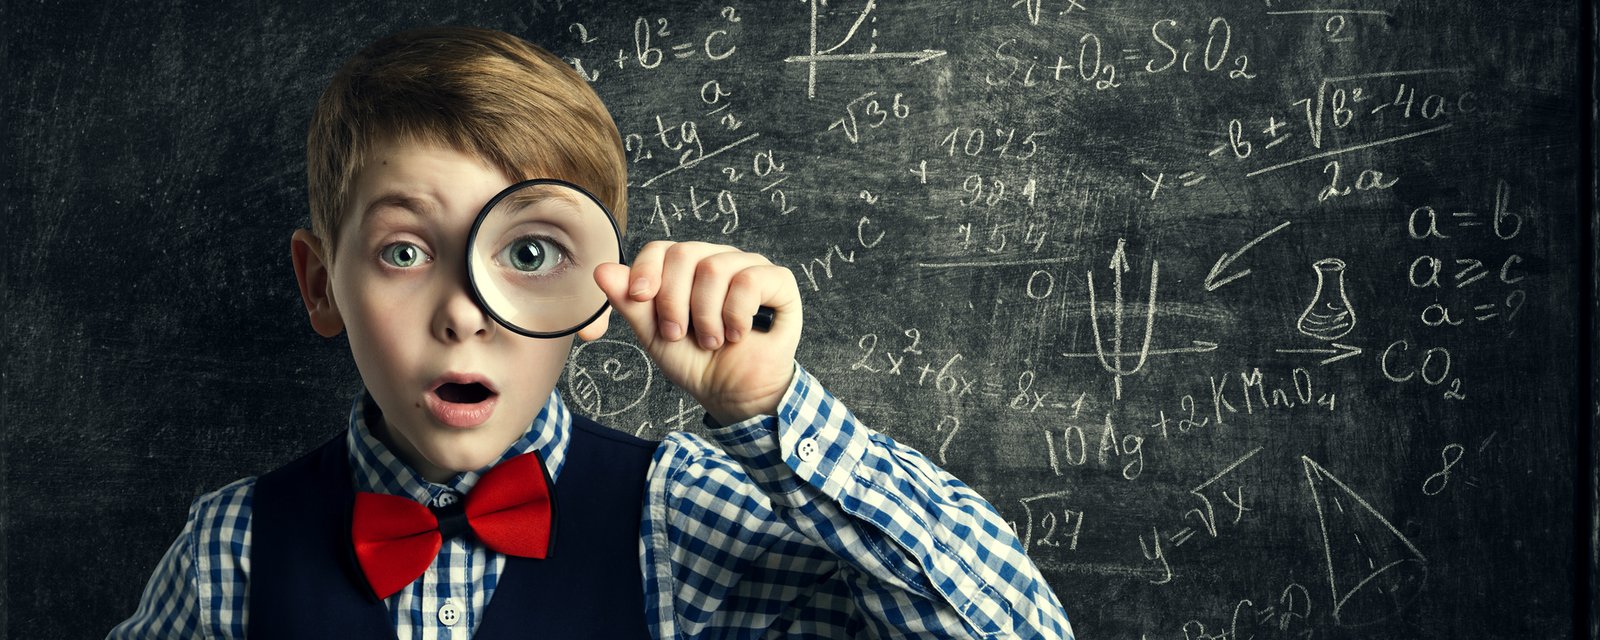 10 trucs pour aider vos enfants à obtenir d'excellents résultats à l'école!